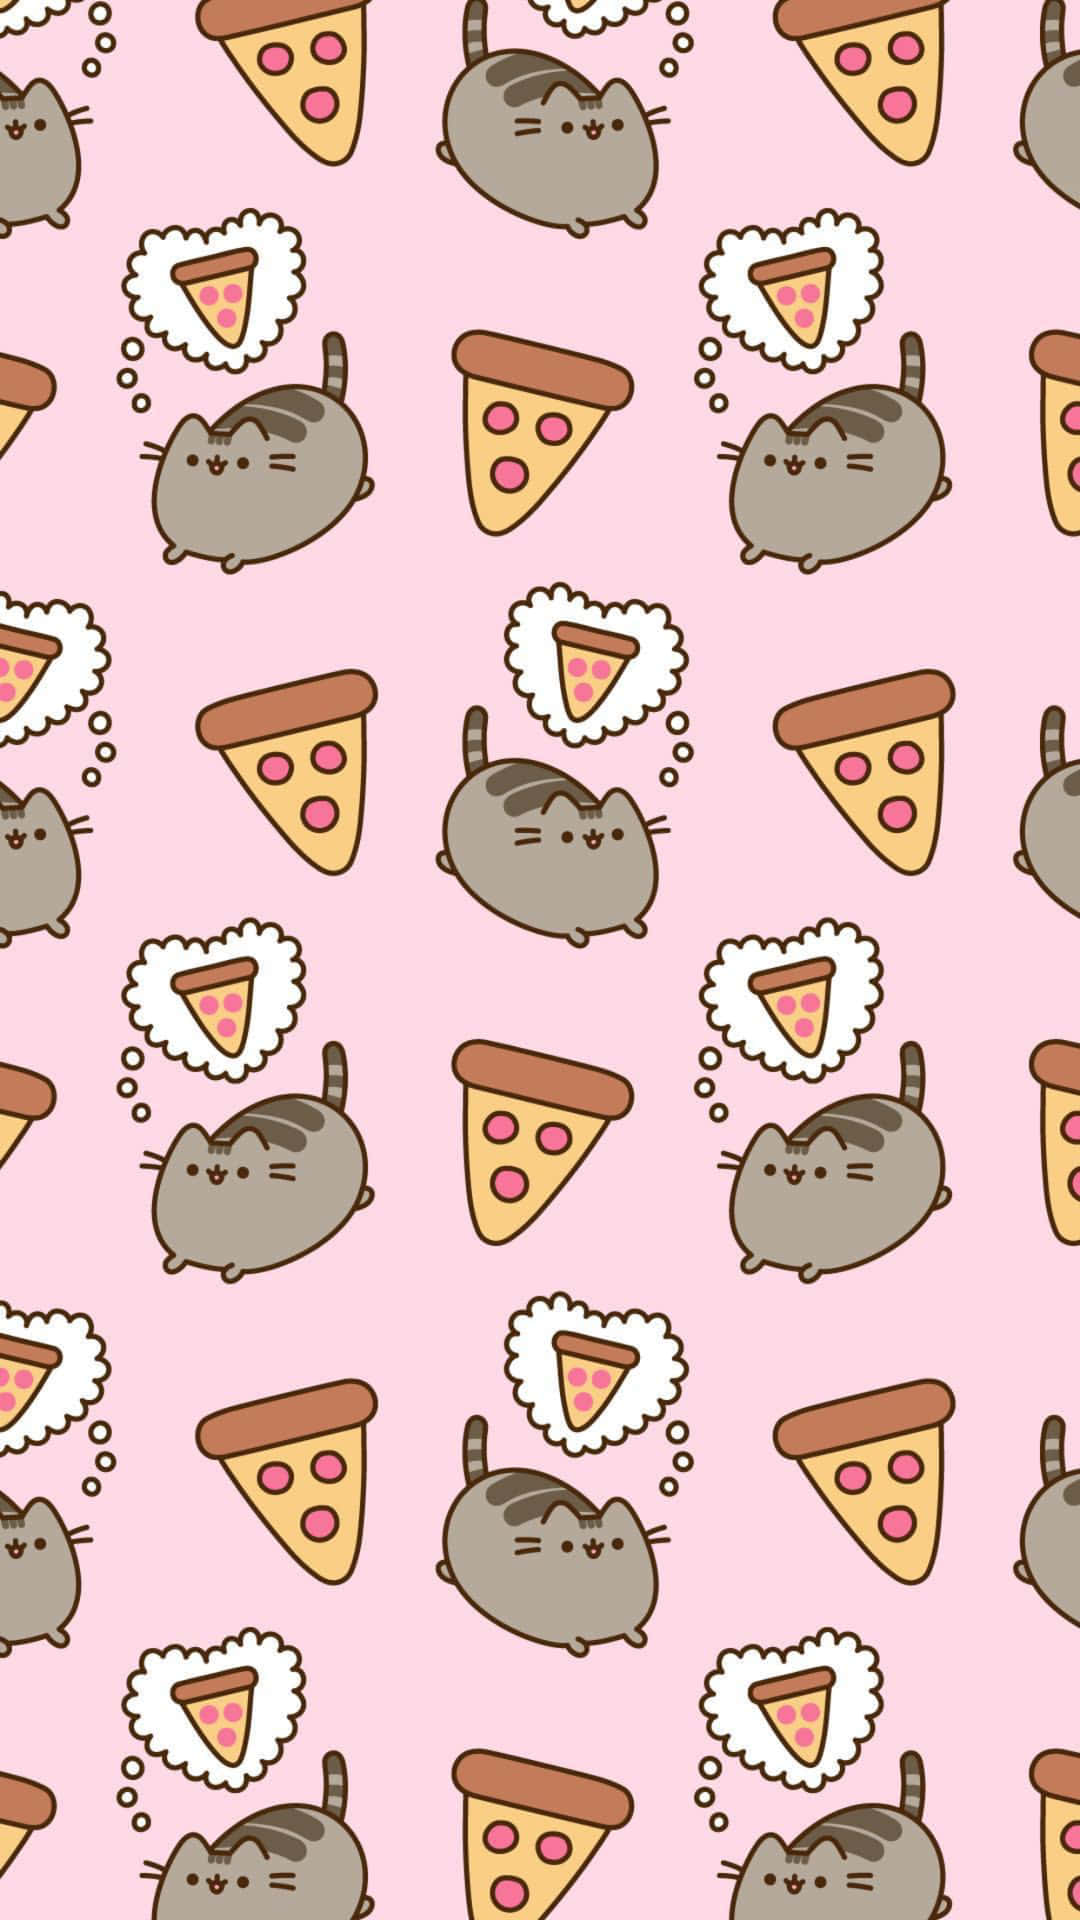 100+] Cute Kawaii Cat Wallpapers